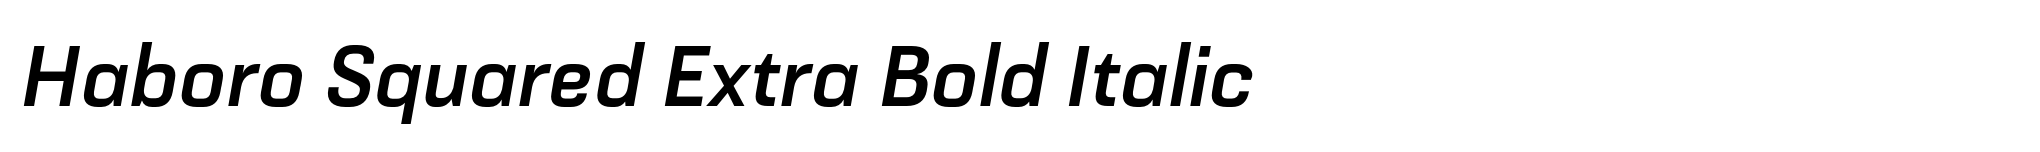 Haboro Squared Extra Bold Italic image